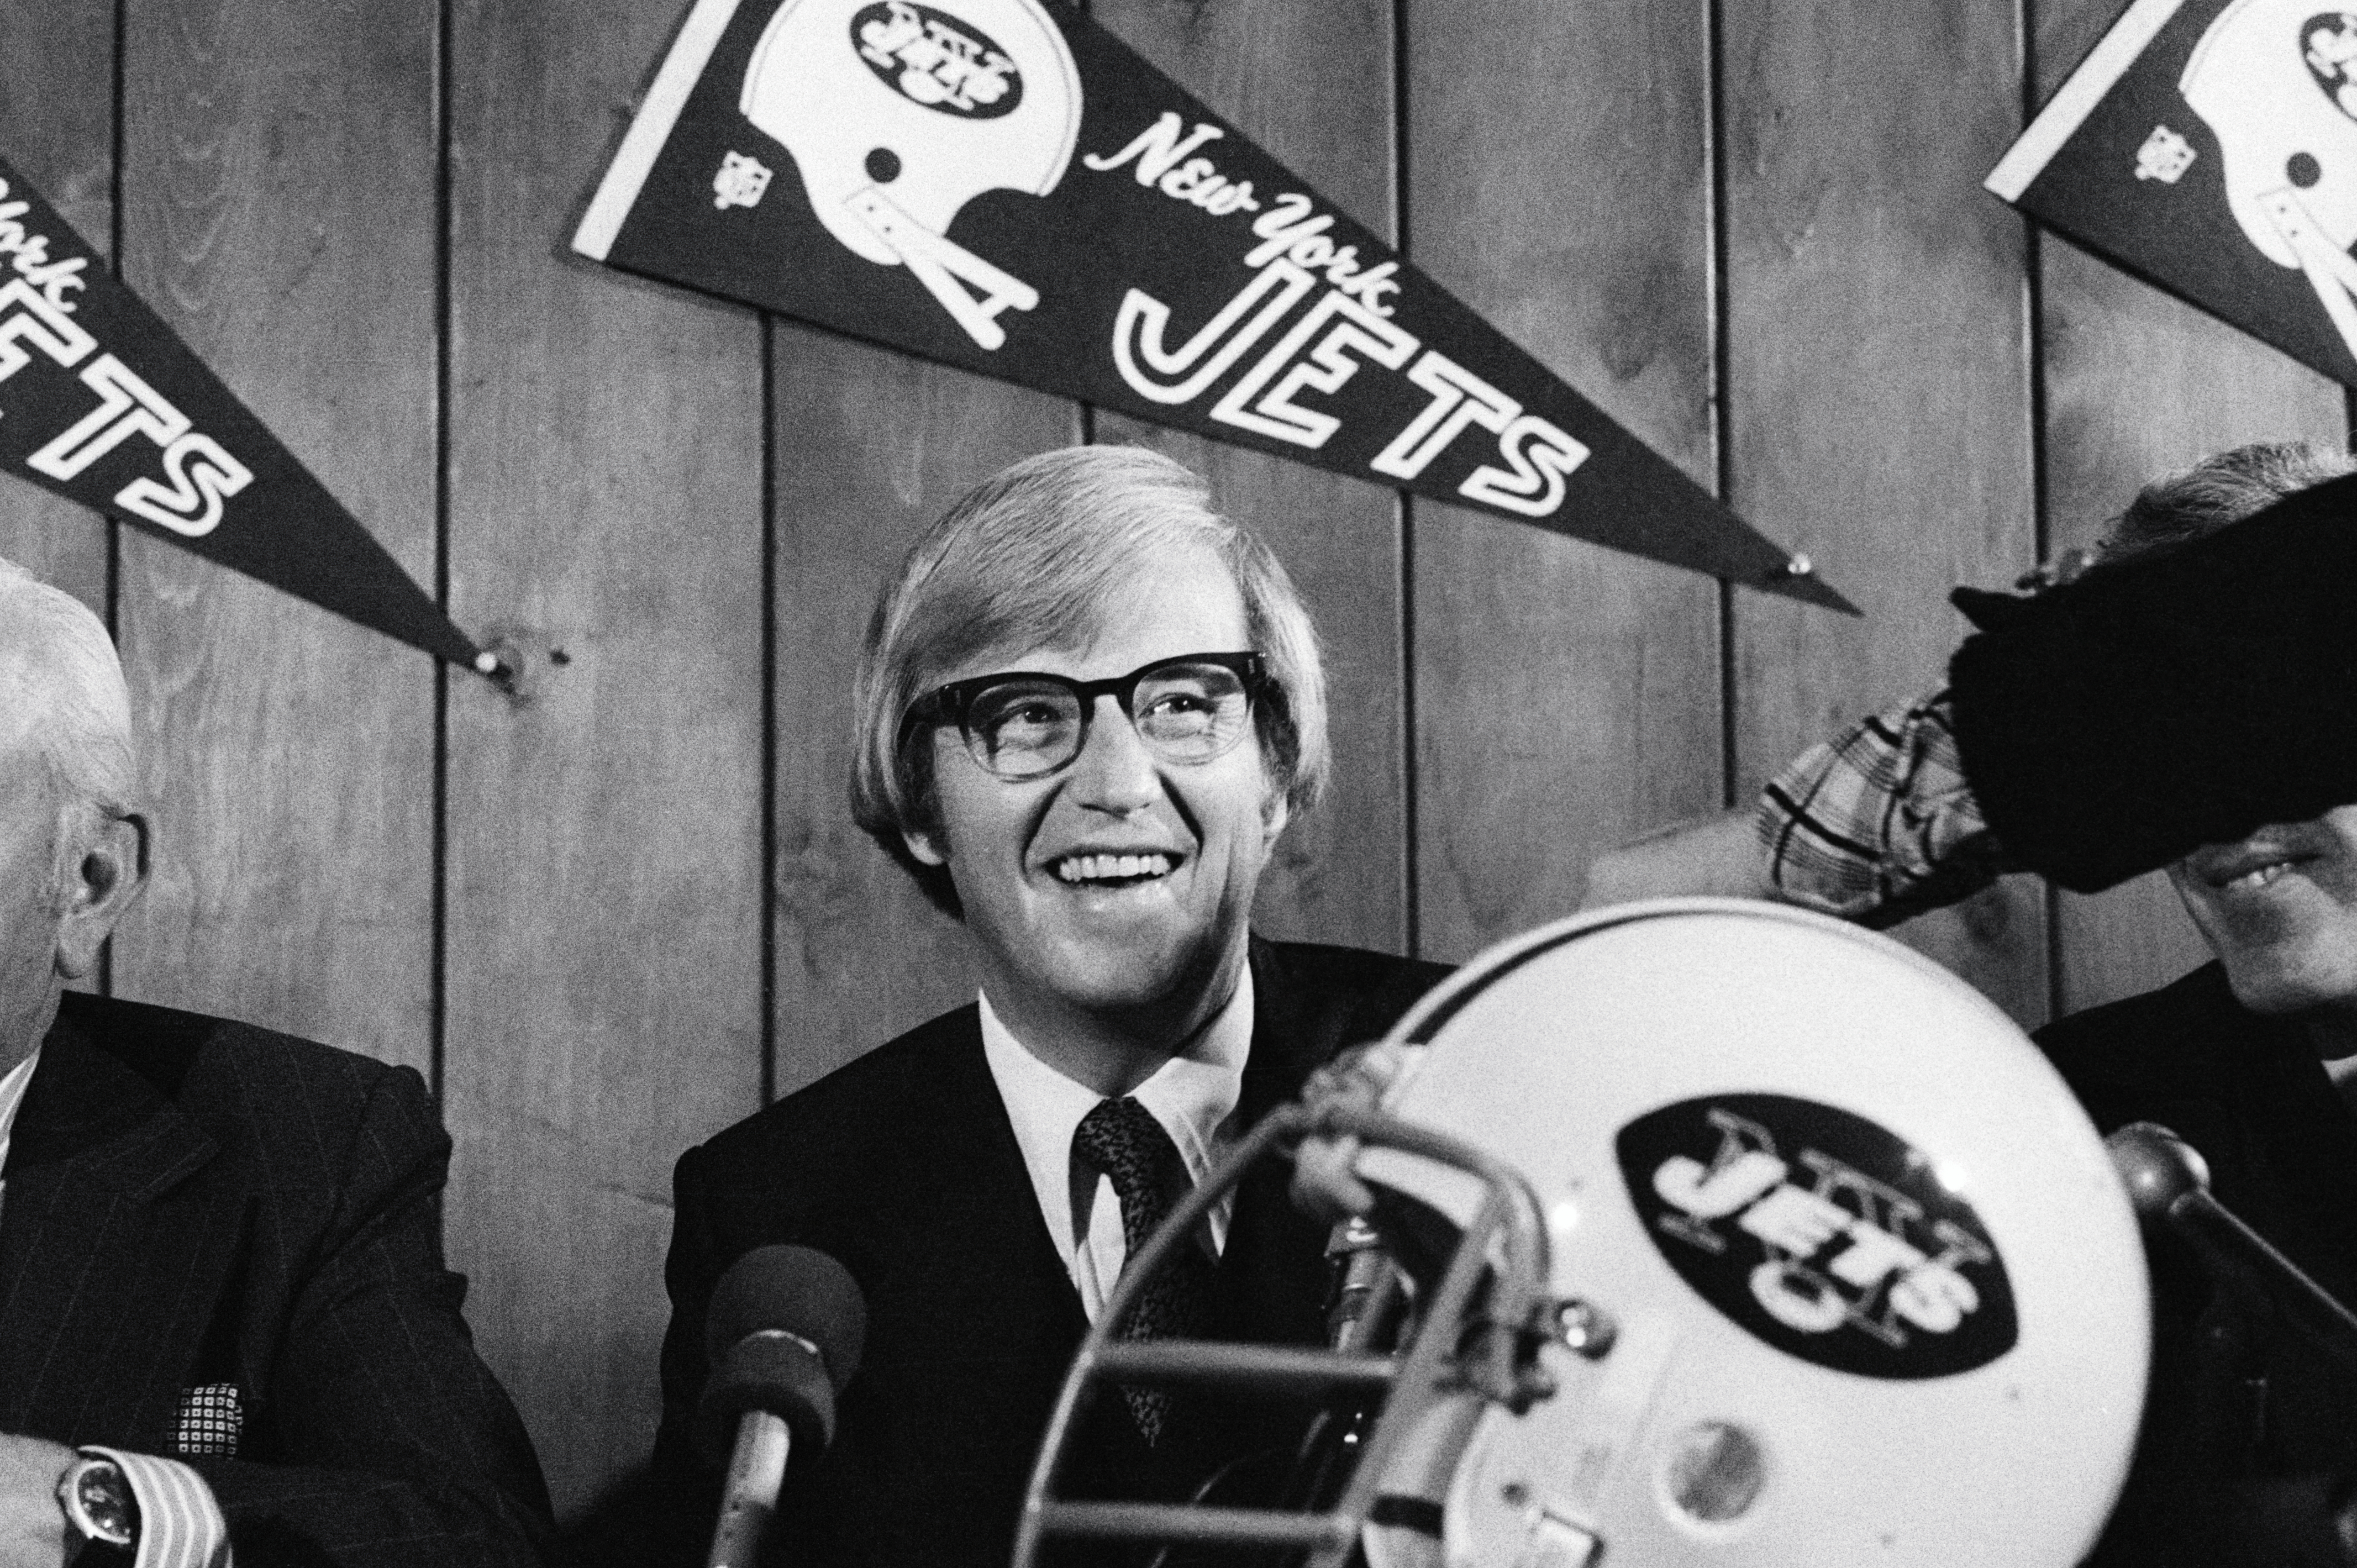 Lou Holtz, like Urban Meyer, had a disastrous single season as an NFL head coach